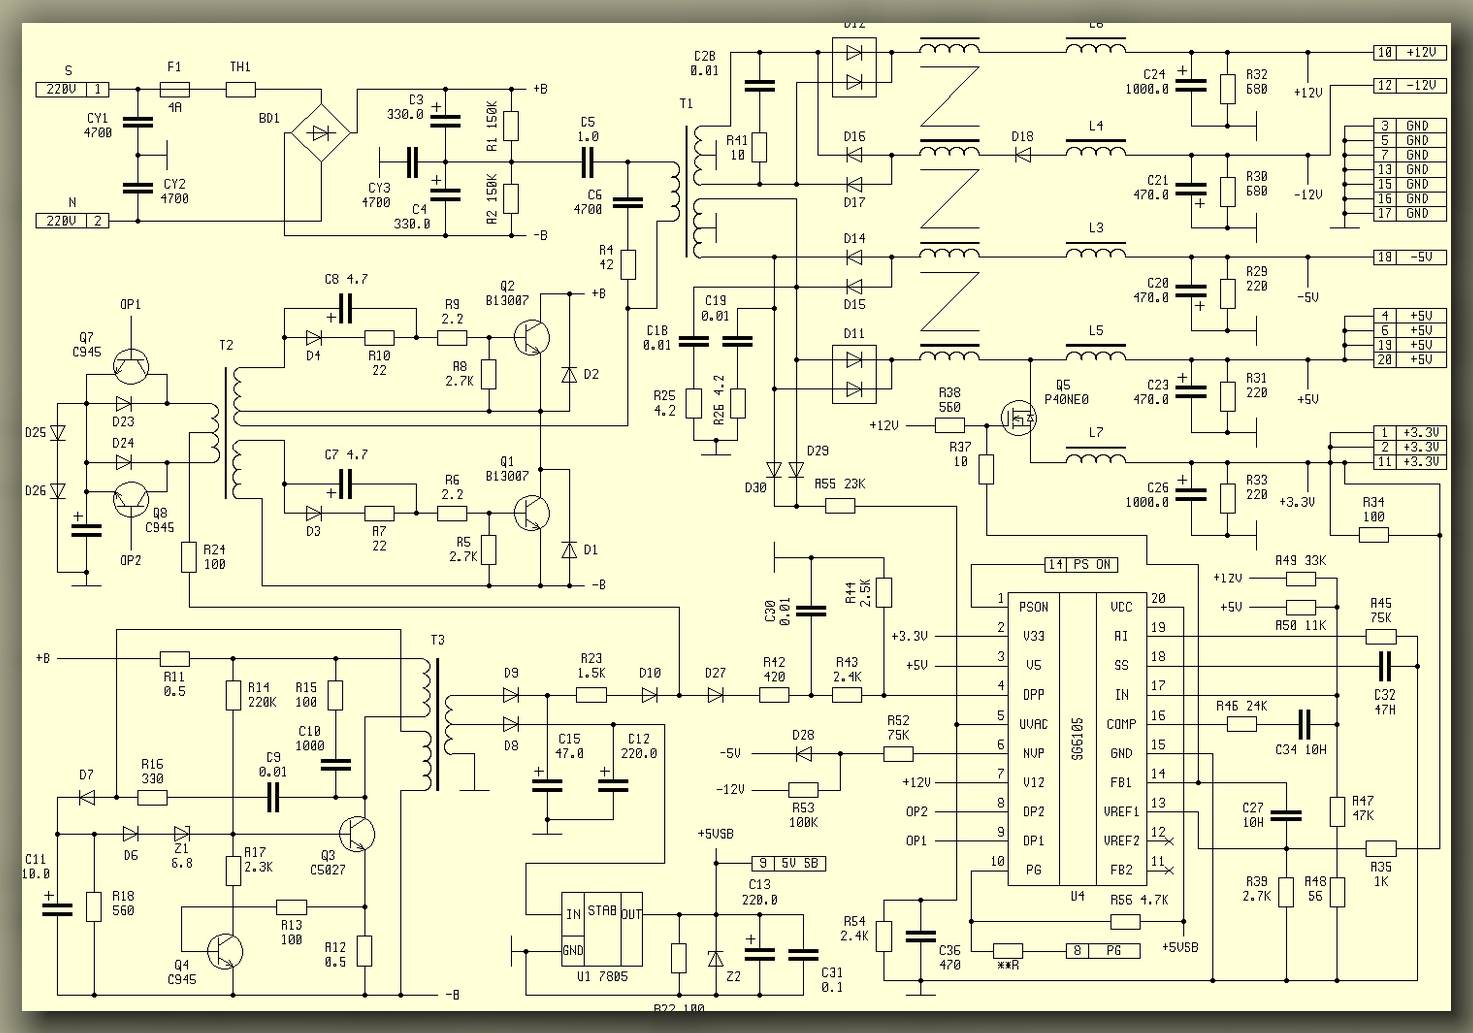 Circuit ontwerp computer voedingen